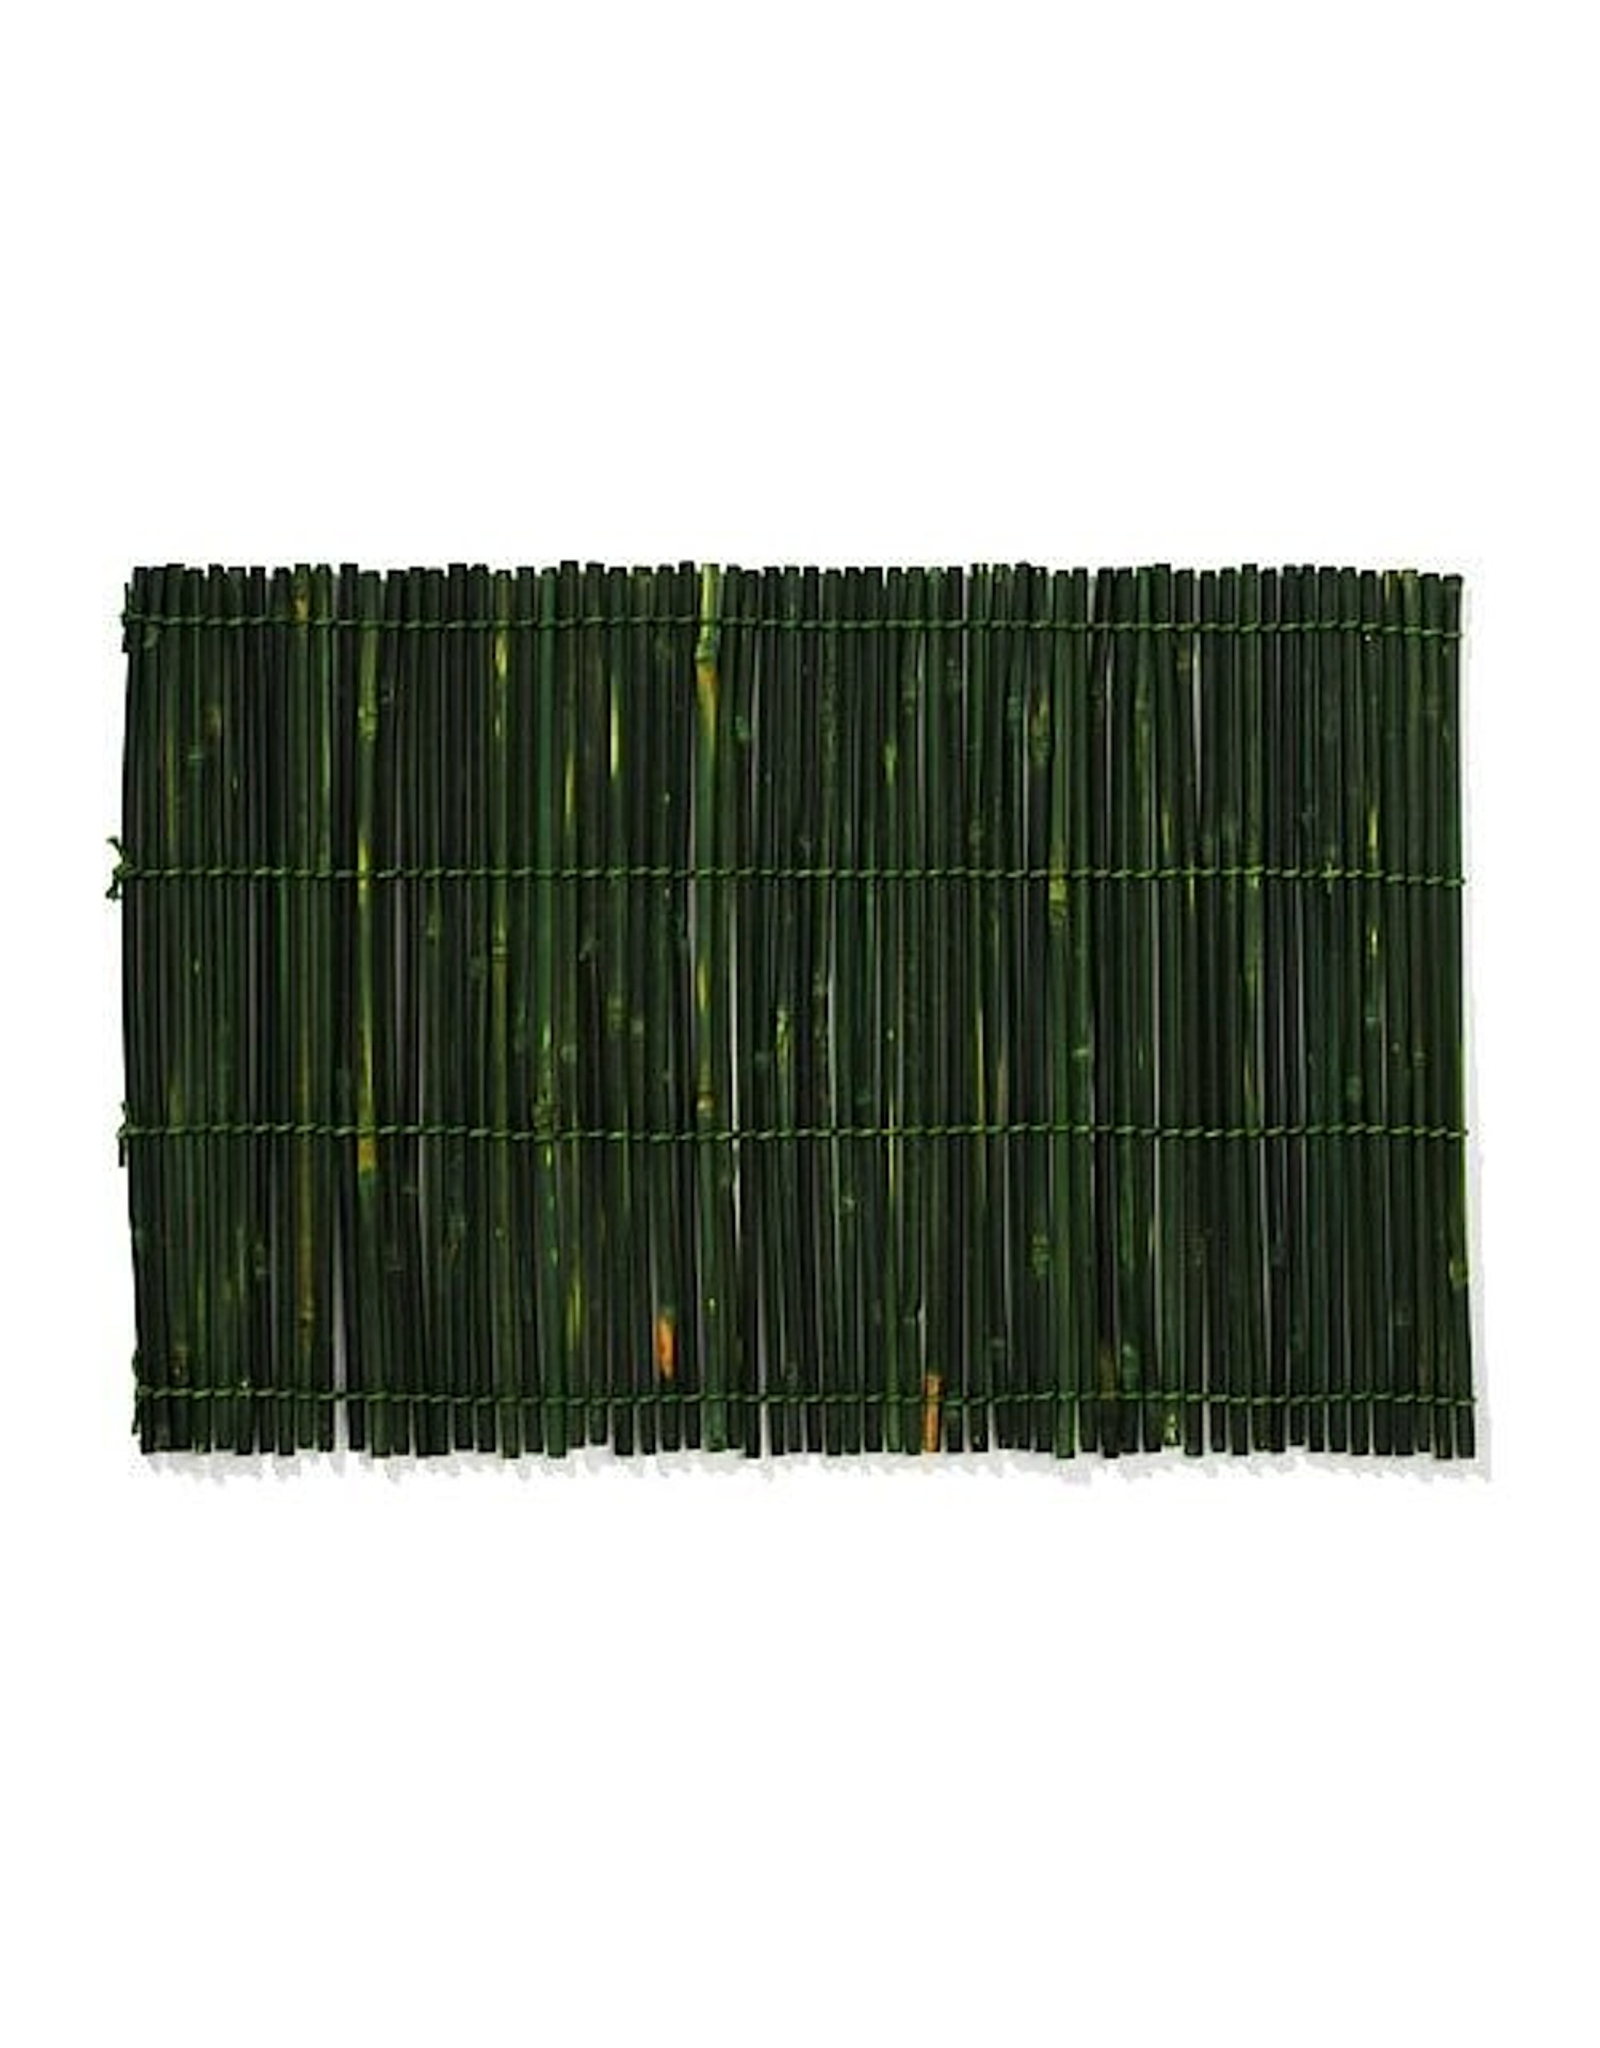 Merritt International Green Bamboo Sticks Placemat Green 13x19